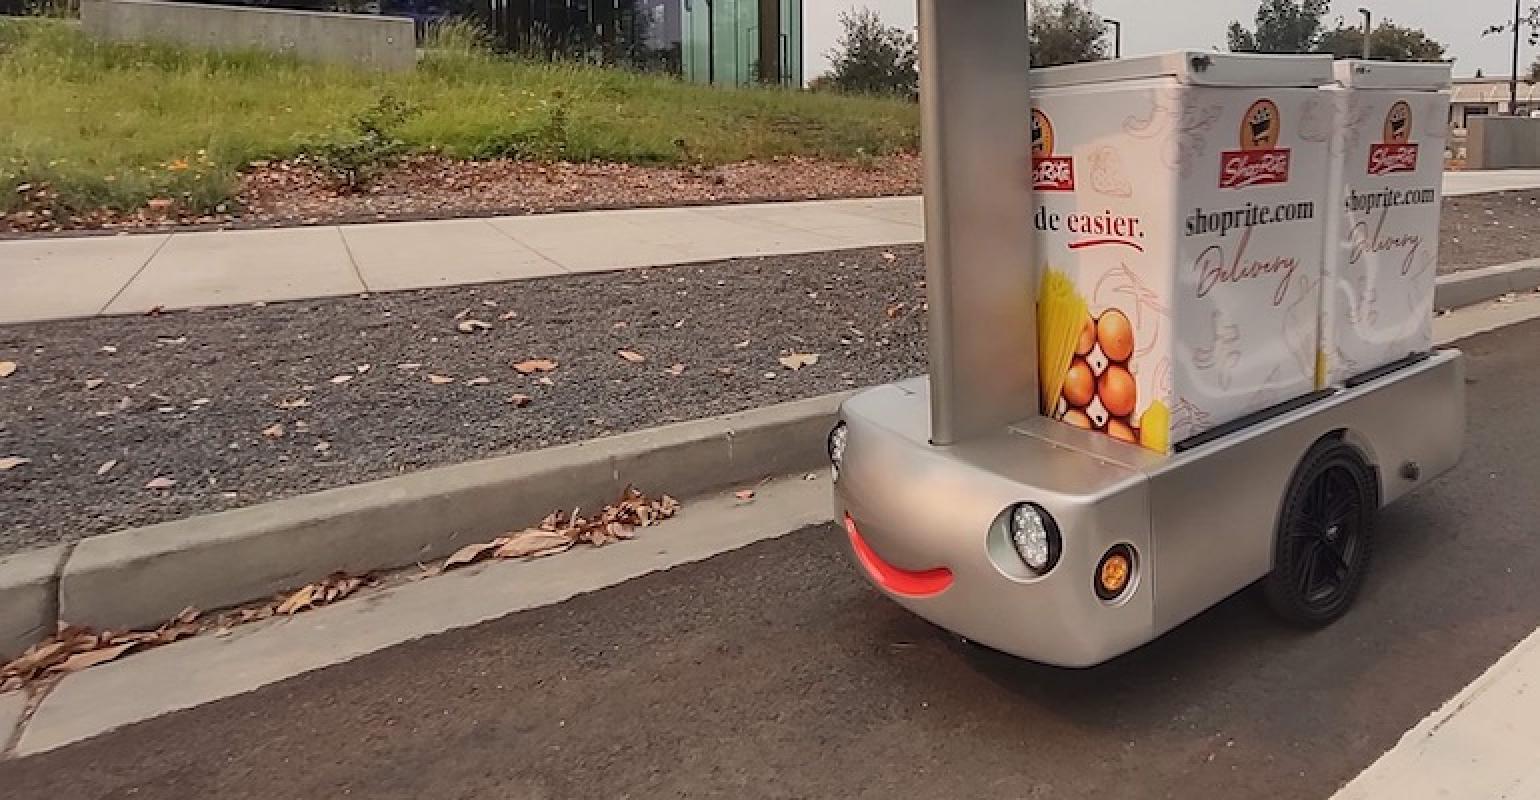 New Jersey Shoprite Robot Tally